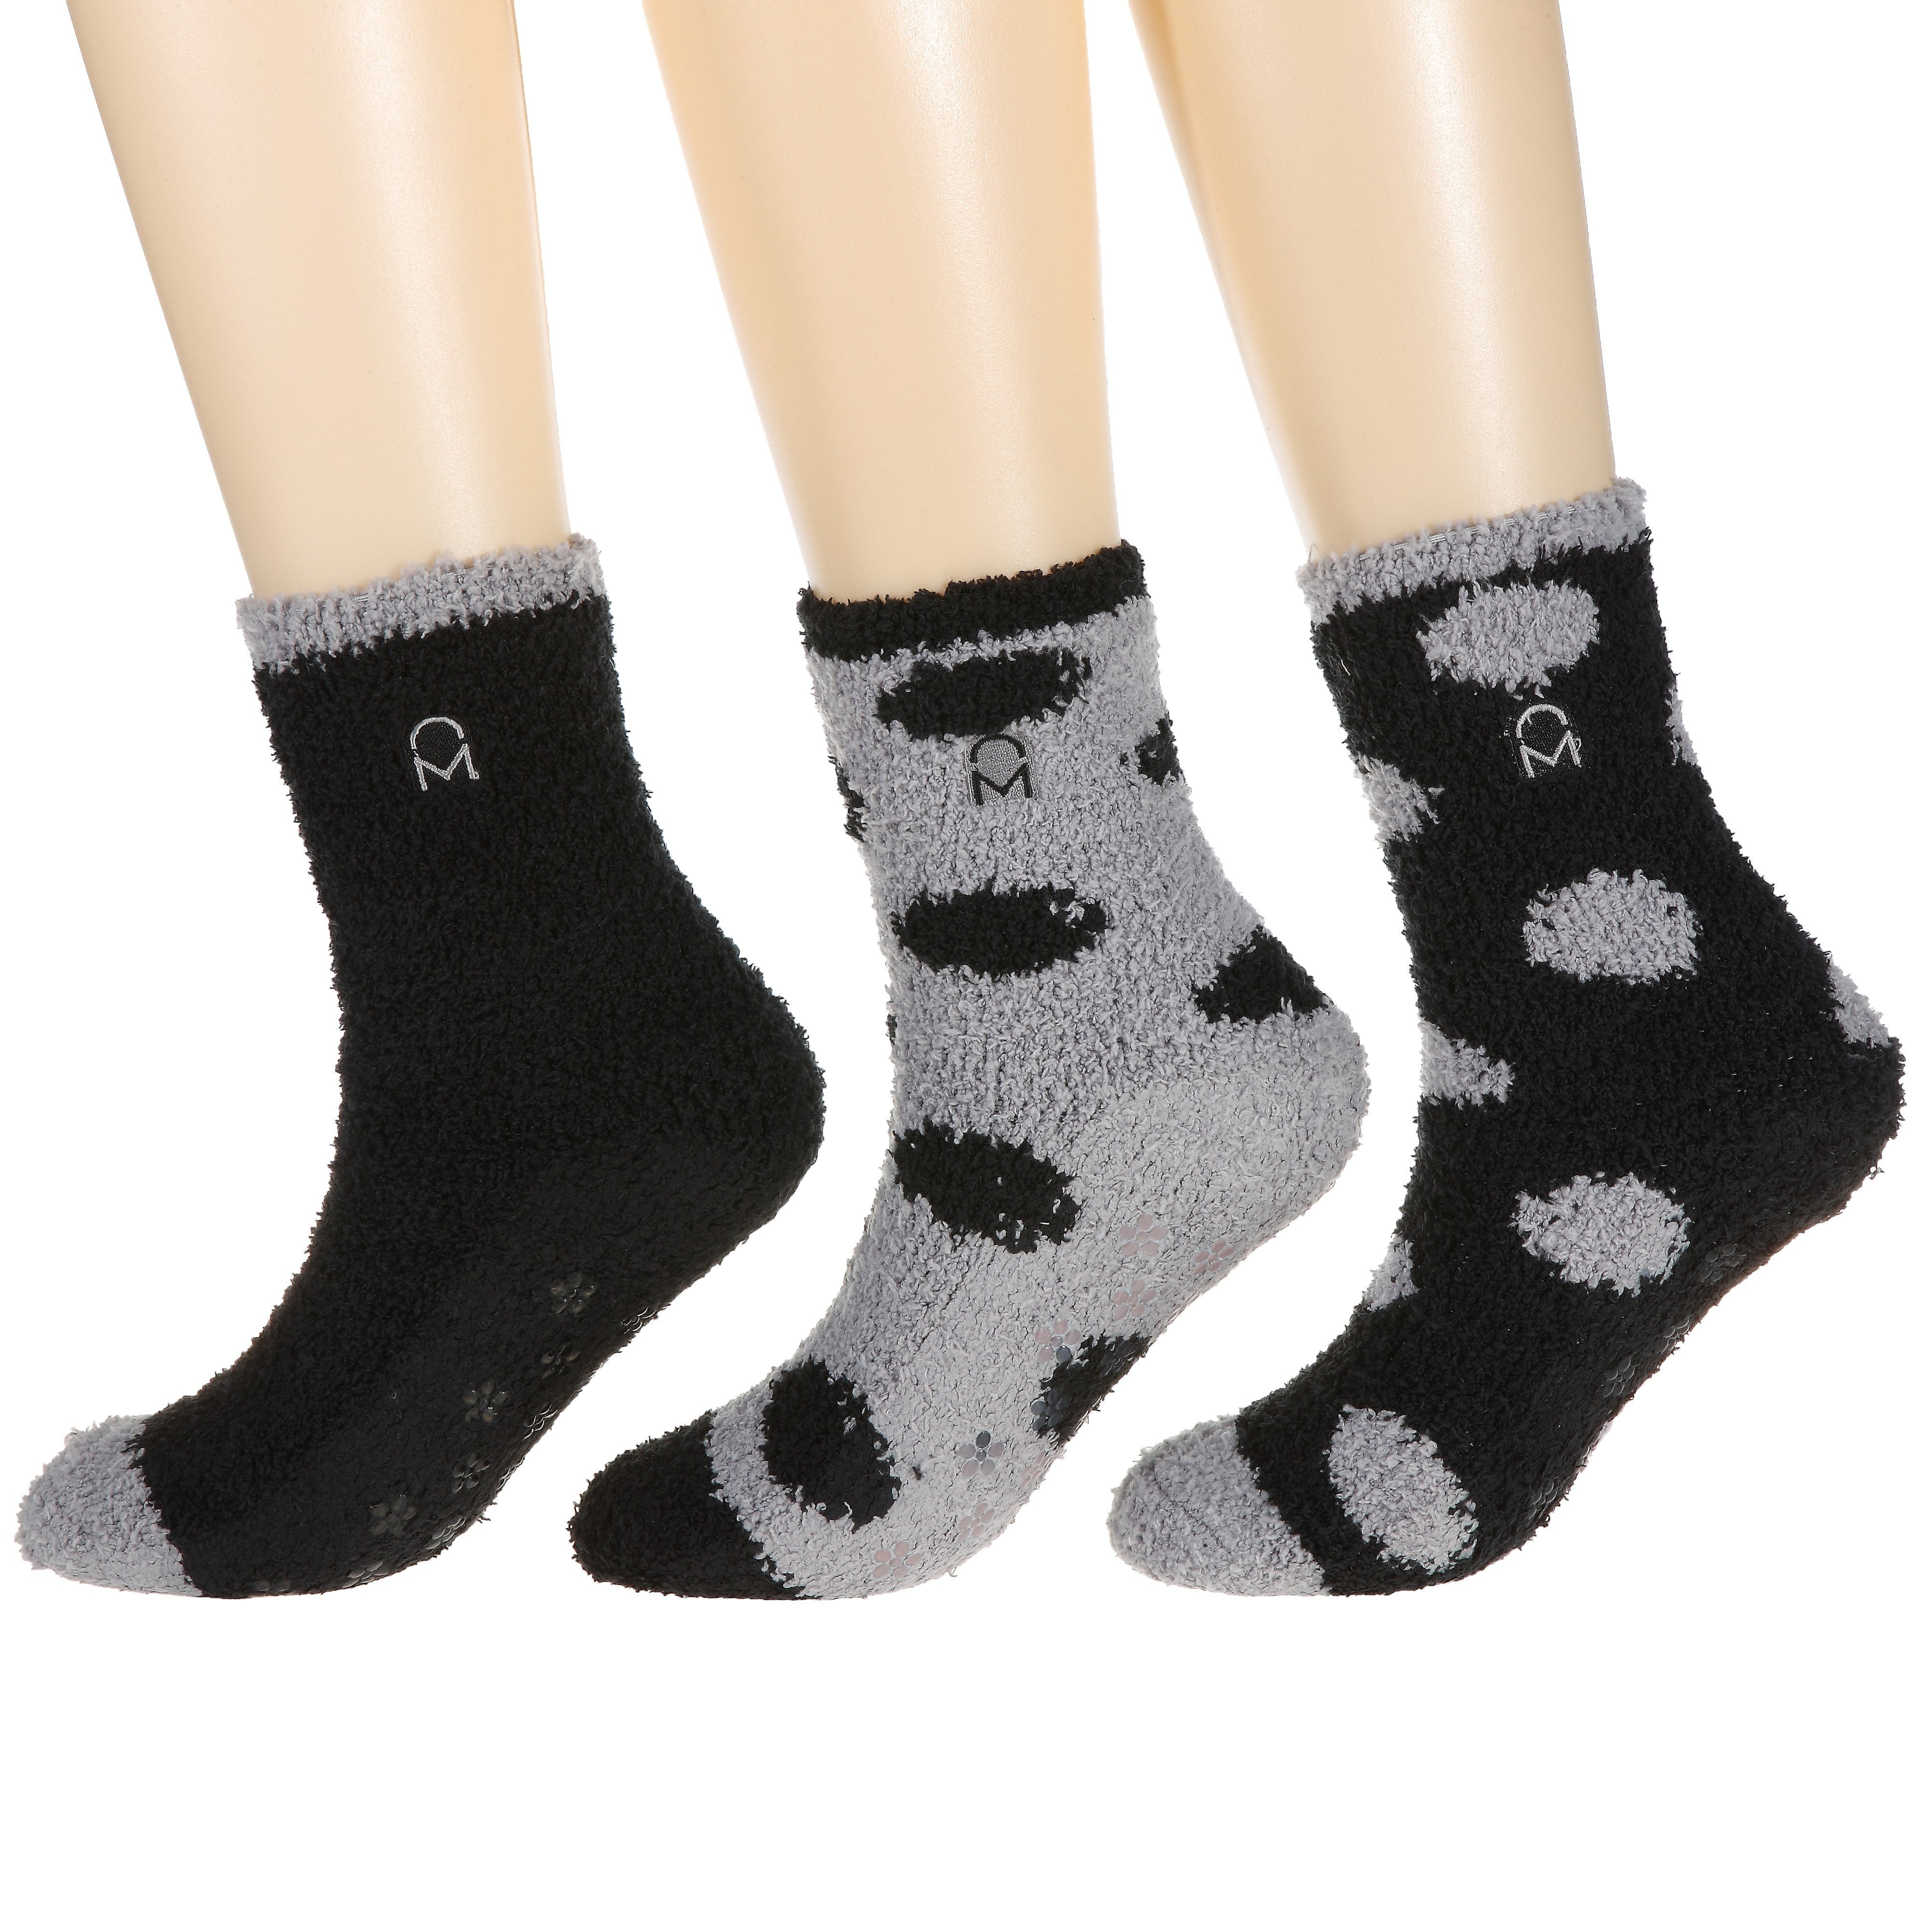 Women's (3 Pairs) Soft Anti-Skid Fuzzy Winter Crew Socks